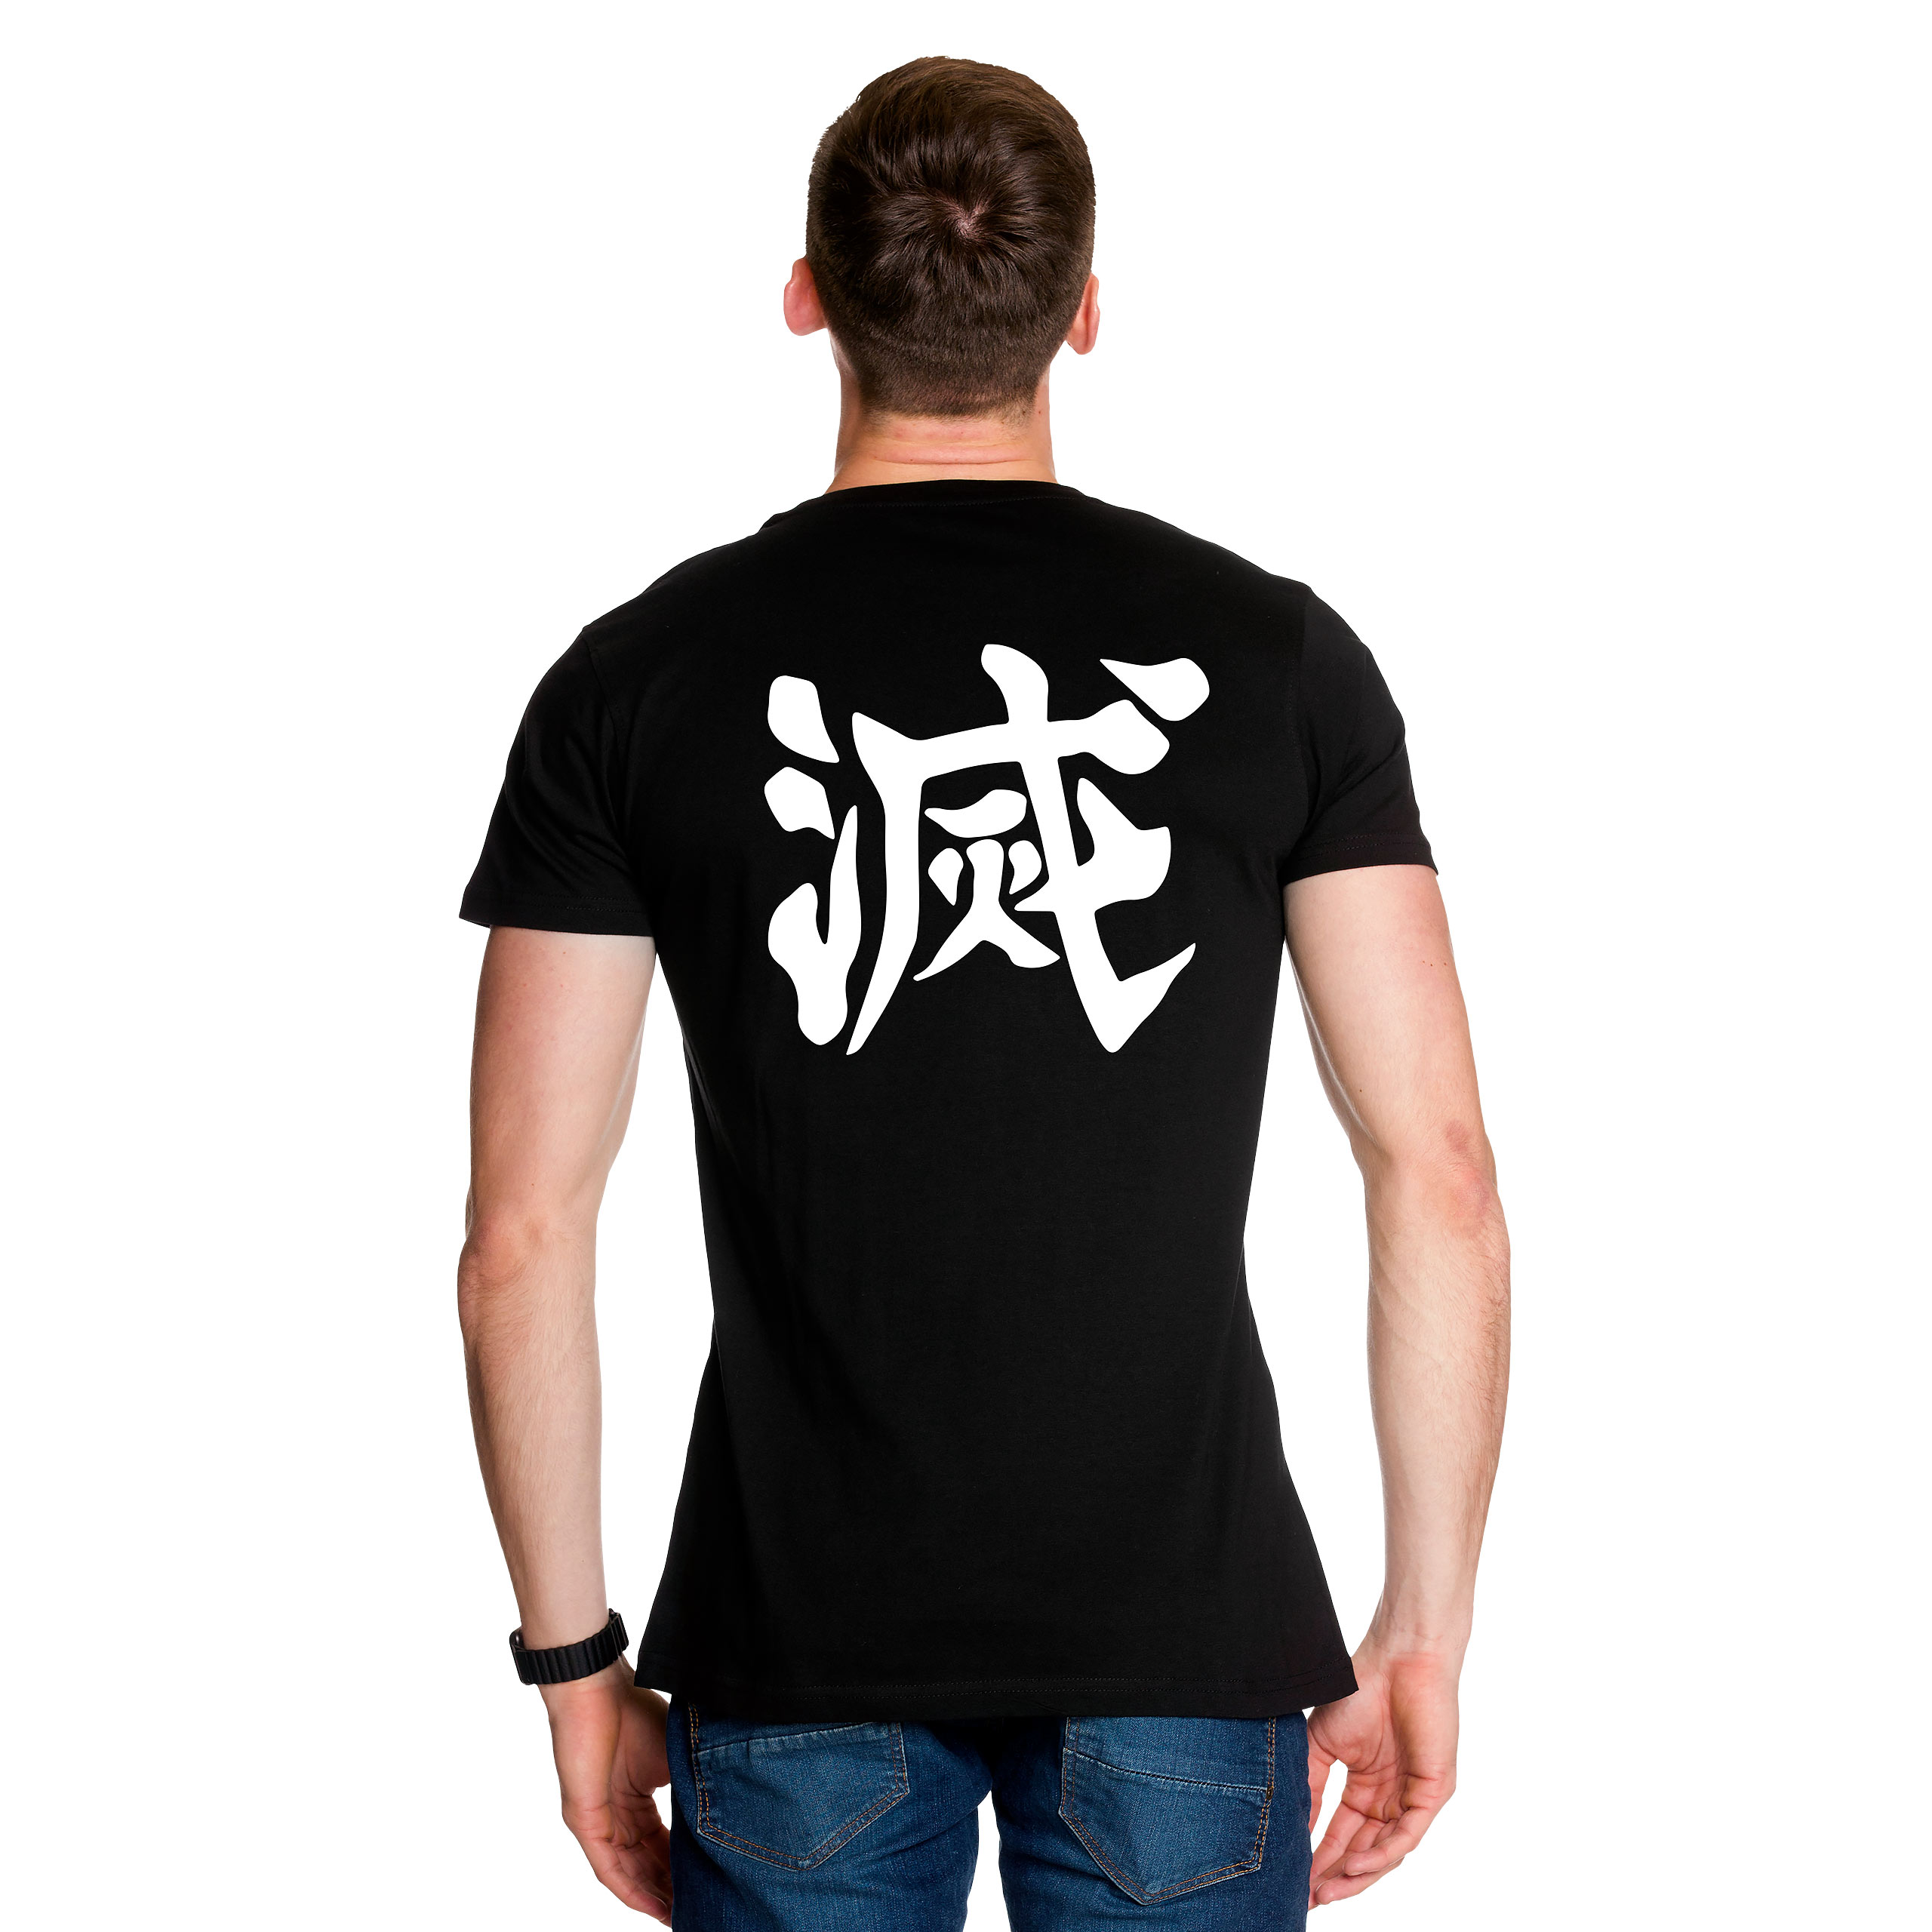 Metsu Kanji T-Shirt für Demon Slayer Fans schwarz